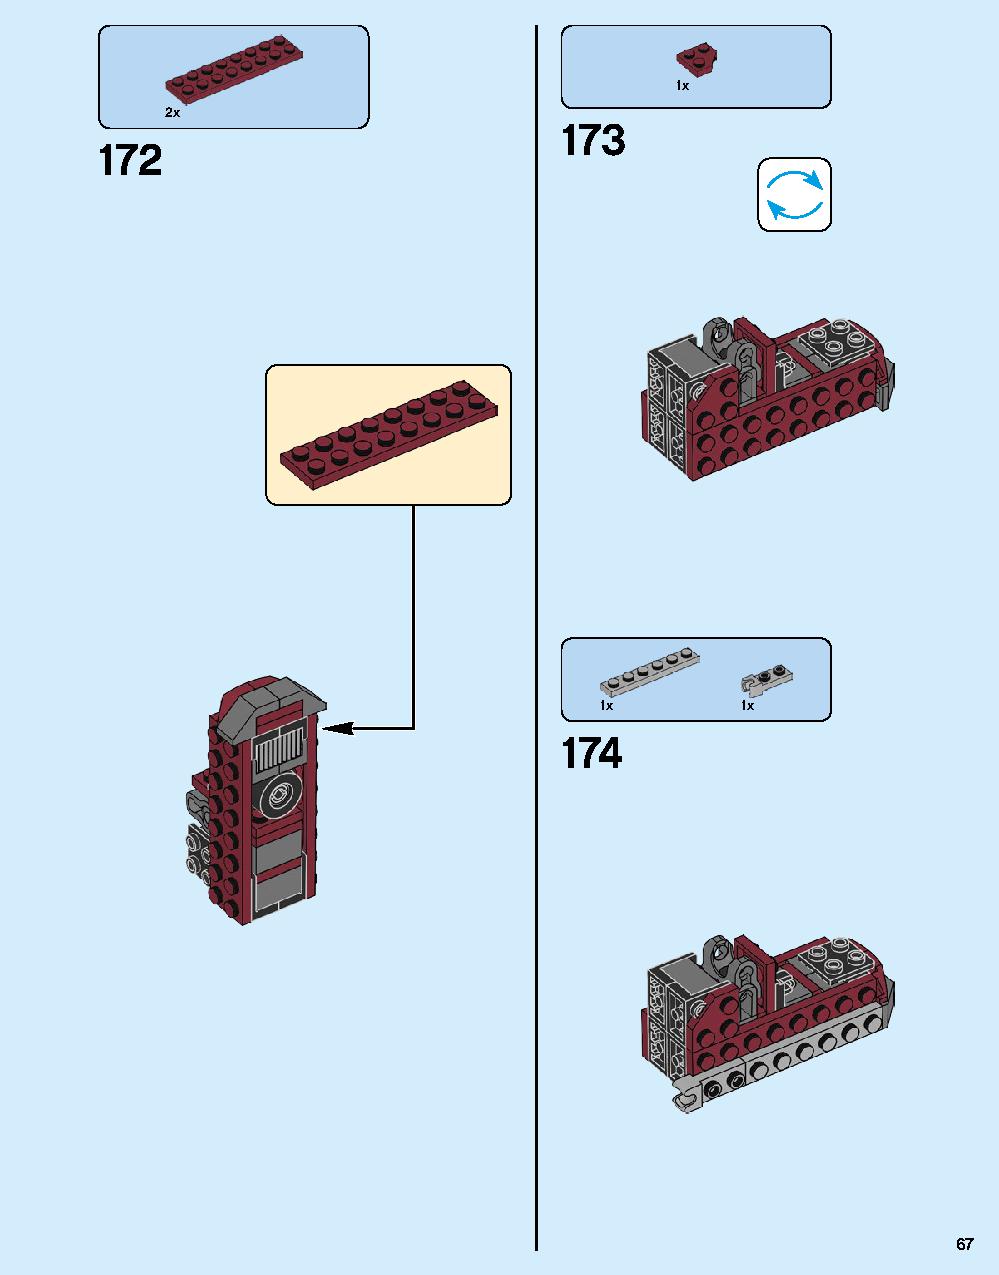 ハルクバスター：ウルトロン・エディション 76105 レゴの商品情報 レゴの説明書・組立方法 67 page